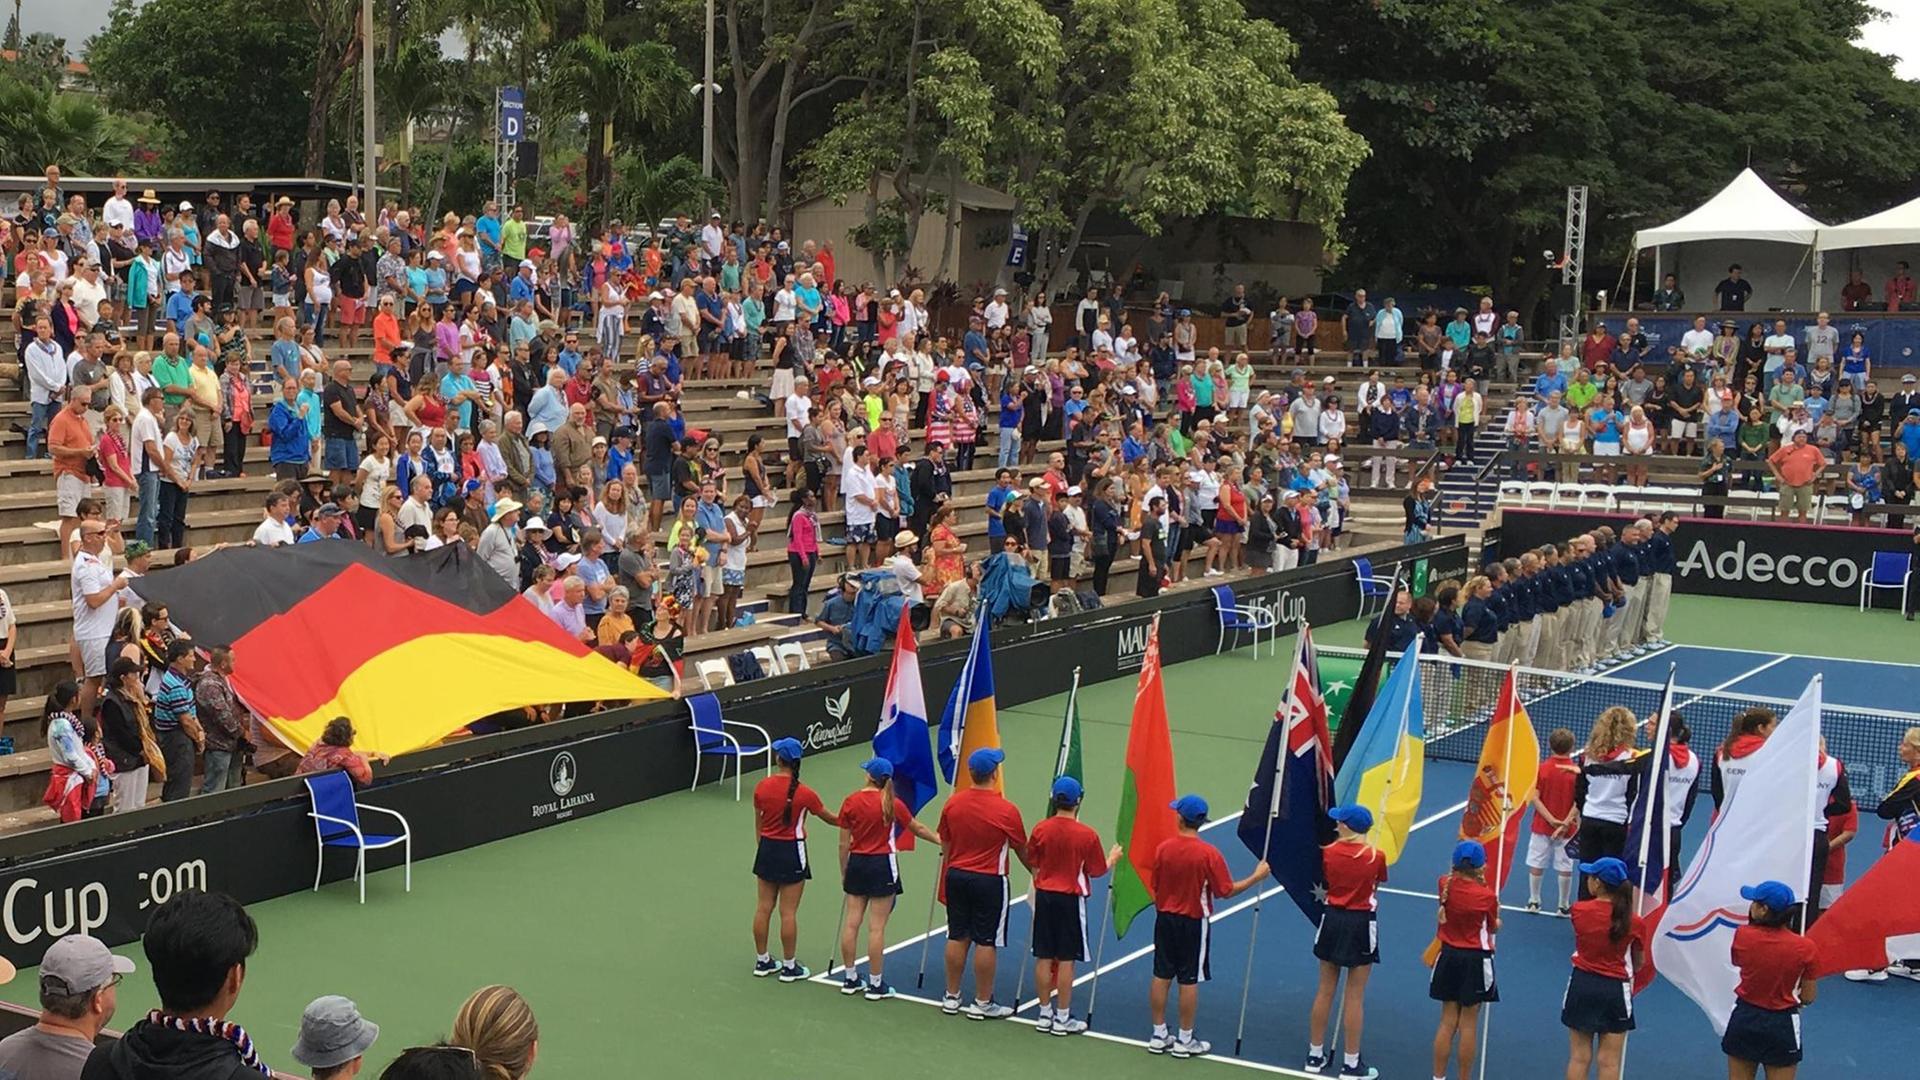 Blick auf den Center Court mit einer ausgebreiteten Deutschlandflagge auf der kleinen Tribüne, auf dem Platz stehen die Akteure zum Absingen der Nationalhymne bereit.